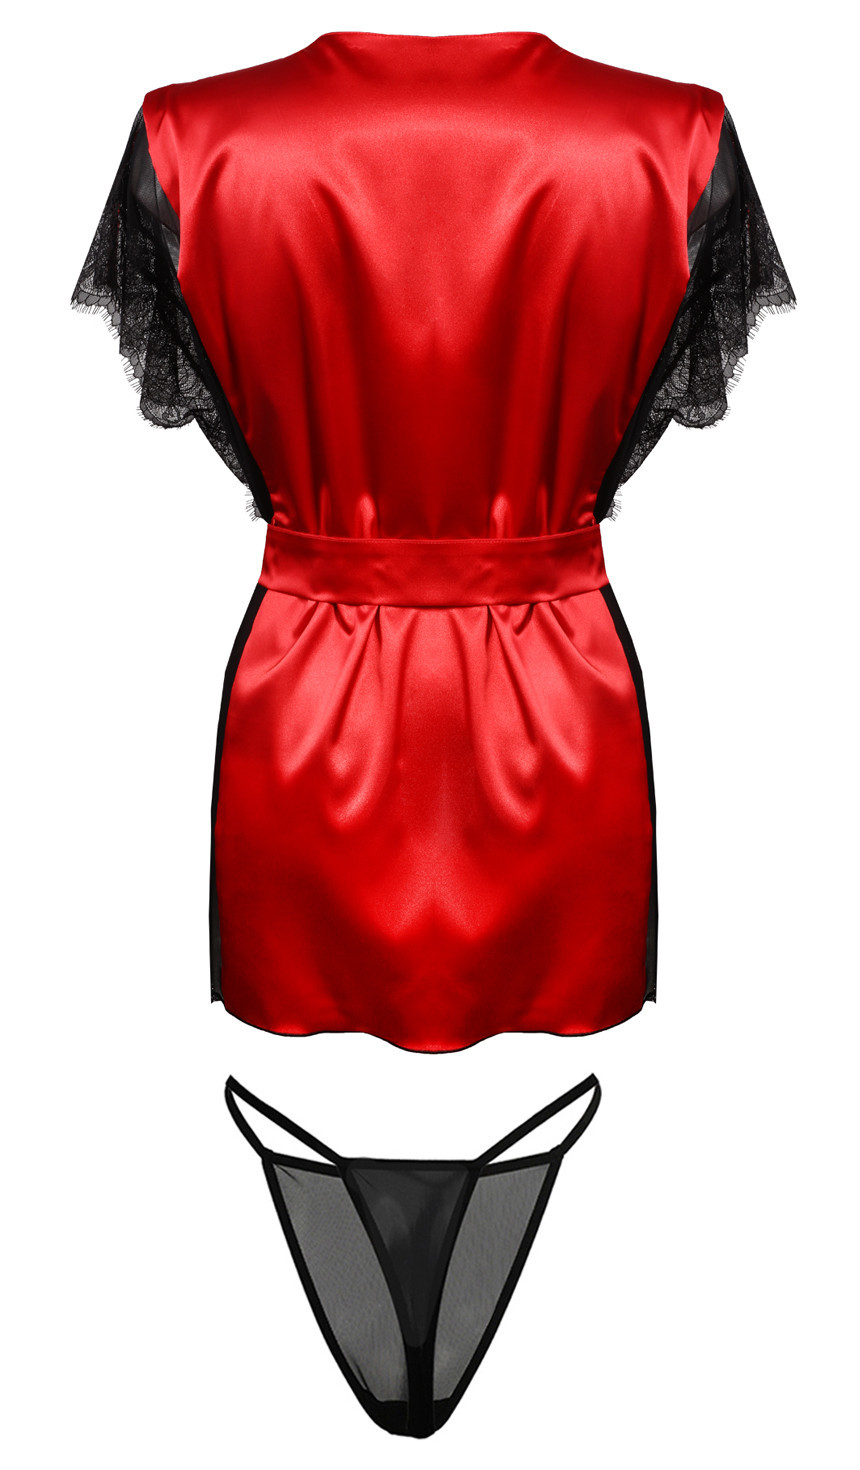 Housecoat model 18240905 Red XS - DKaren